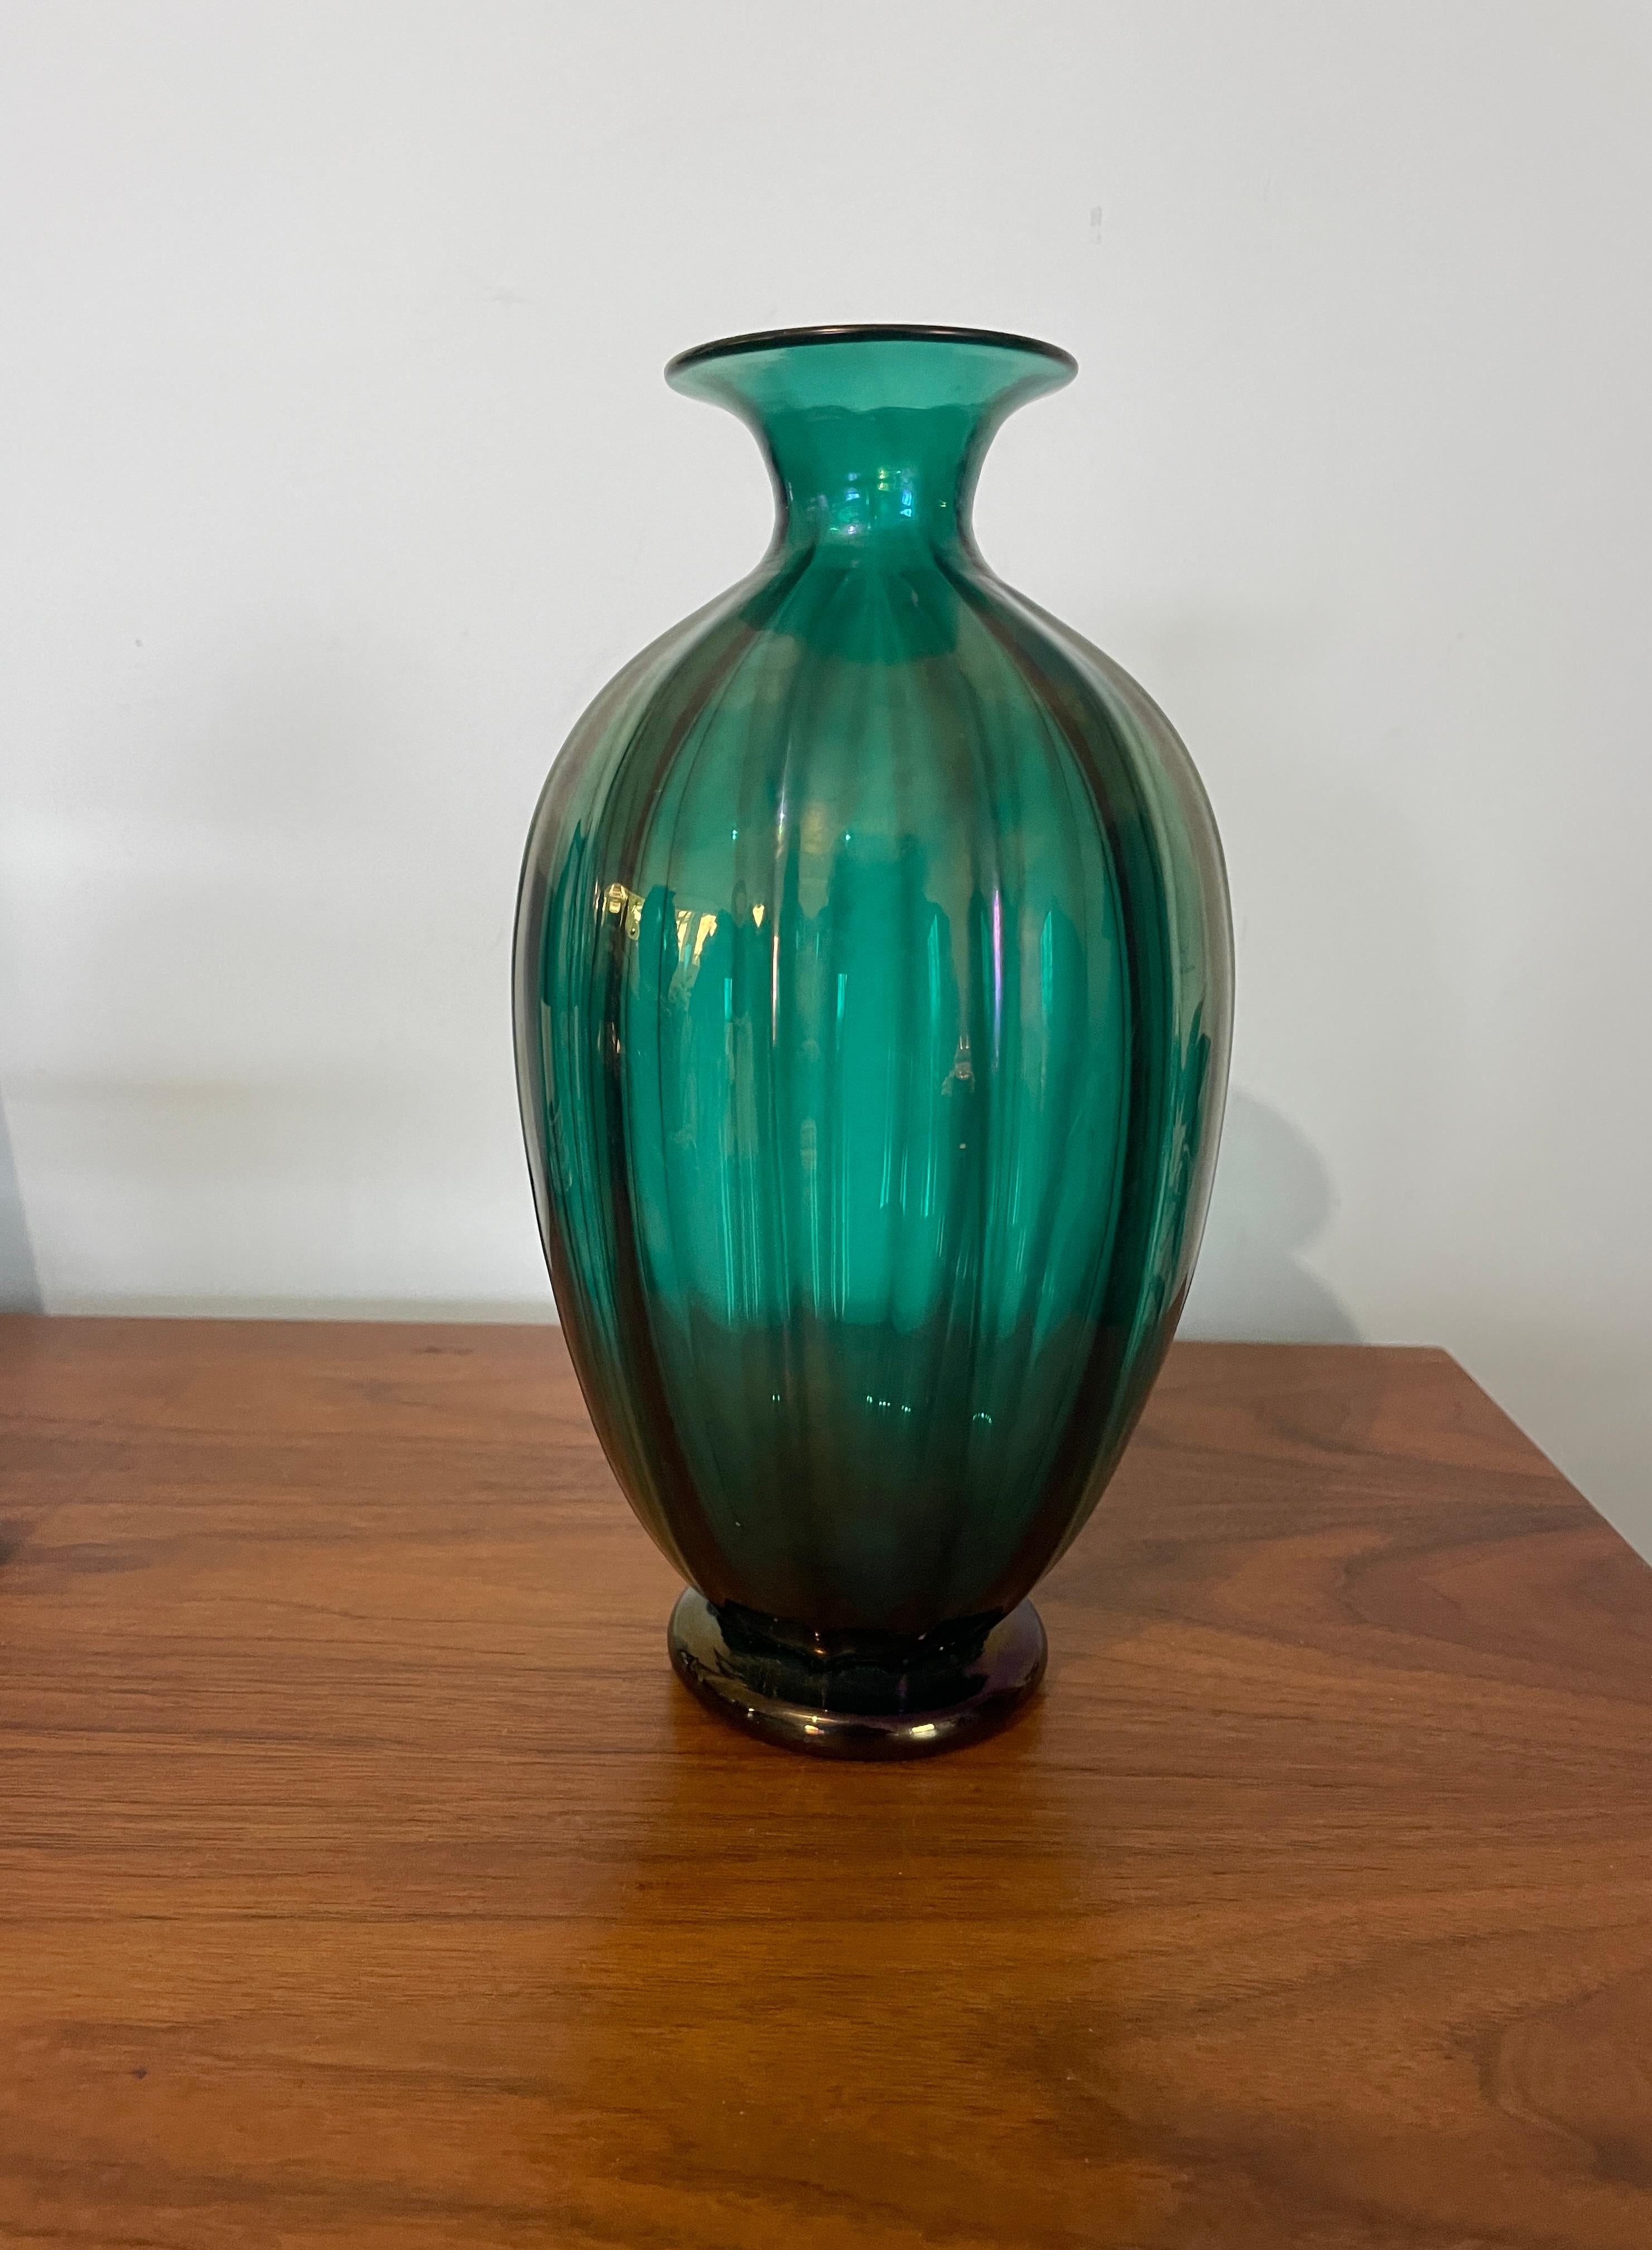 Ce magnifique vase d'Archimede Seguso présente des irisations nervurées dans une étonnante nuance de vert, ce qui en fait un ajout parfait à toute collection d'objets décoratifs. Le vase a été fabriqué avec beaucoup de soin et d'attention aux